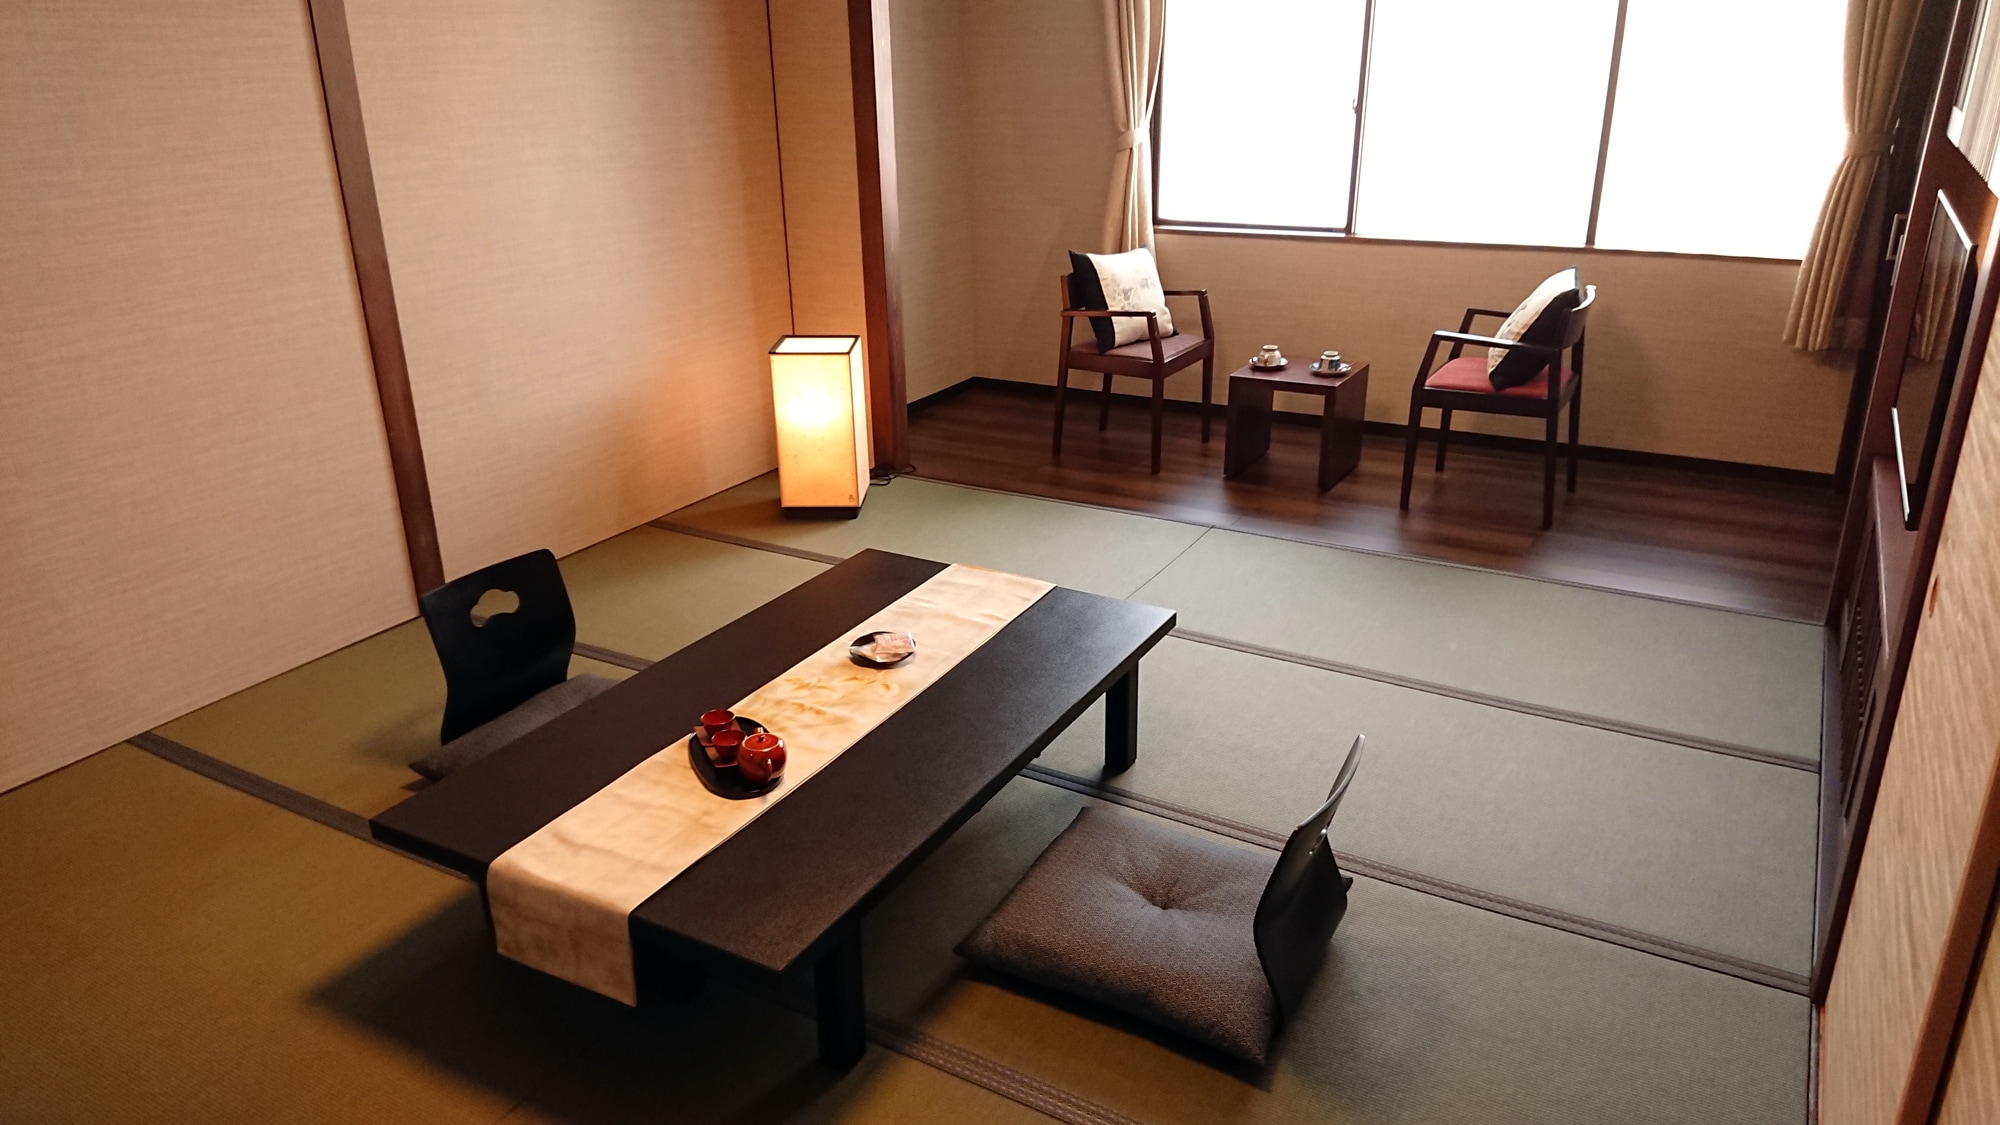 Nadeshiko Japanese-style room 35 square meters